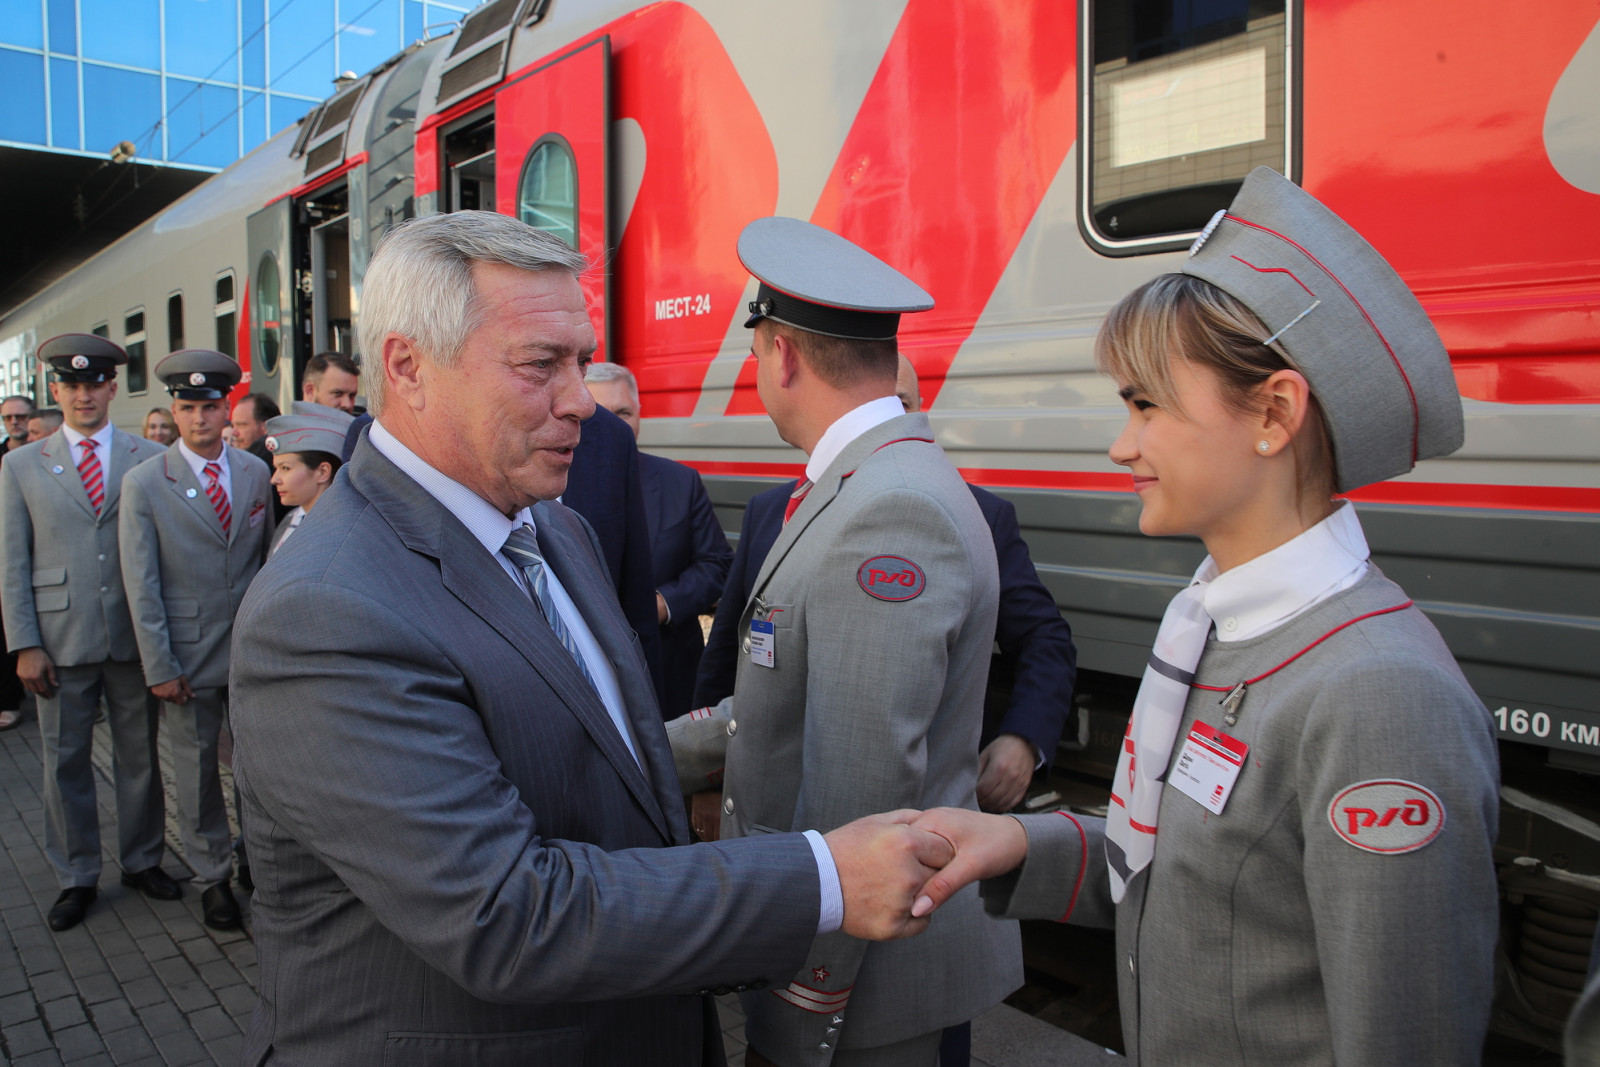 Фирменному поезду «Ростов-Москва» вернули название «ТИХИЙ ДОН». Как он выглядит?